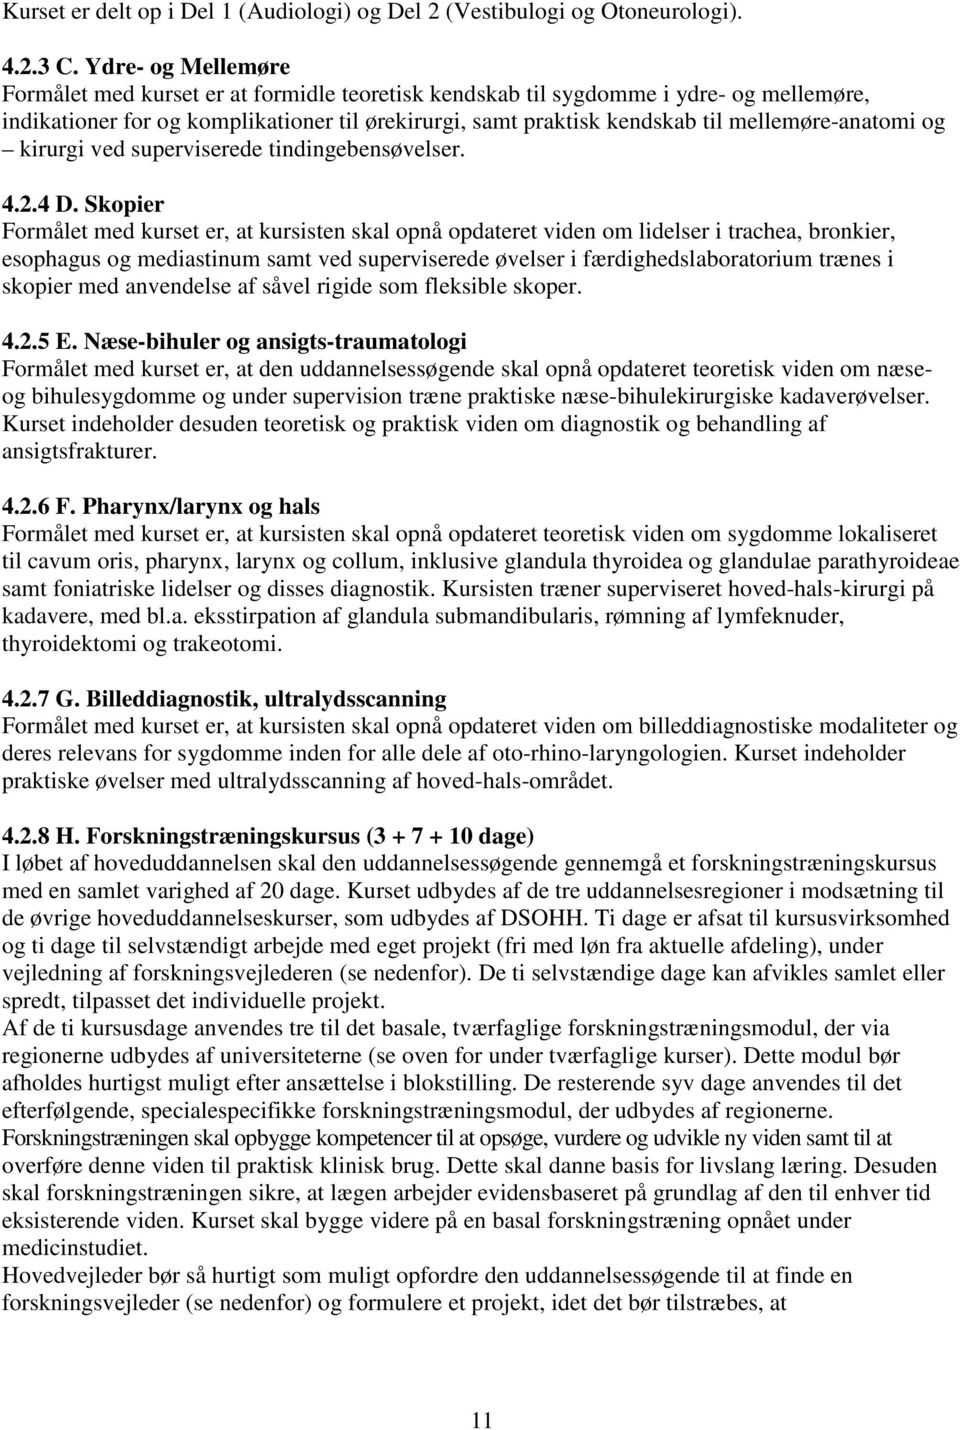 mellemøre-anatomi og kirurgi ved superviserede tindingebensøvelser. 4.2.4 D.